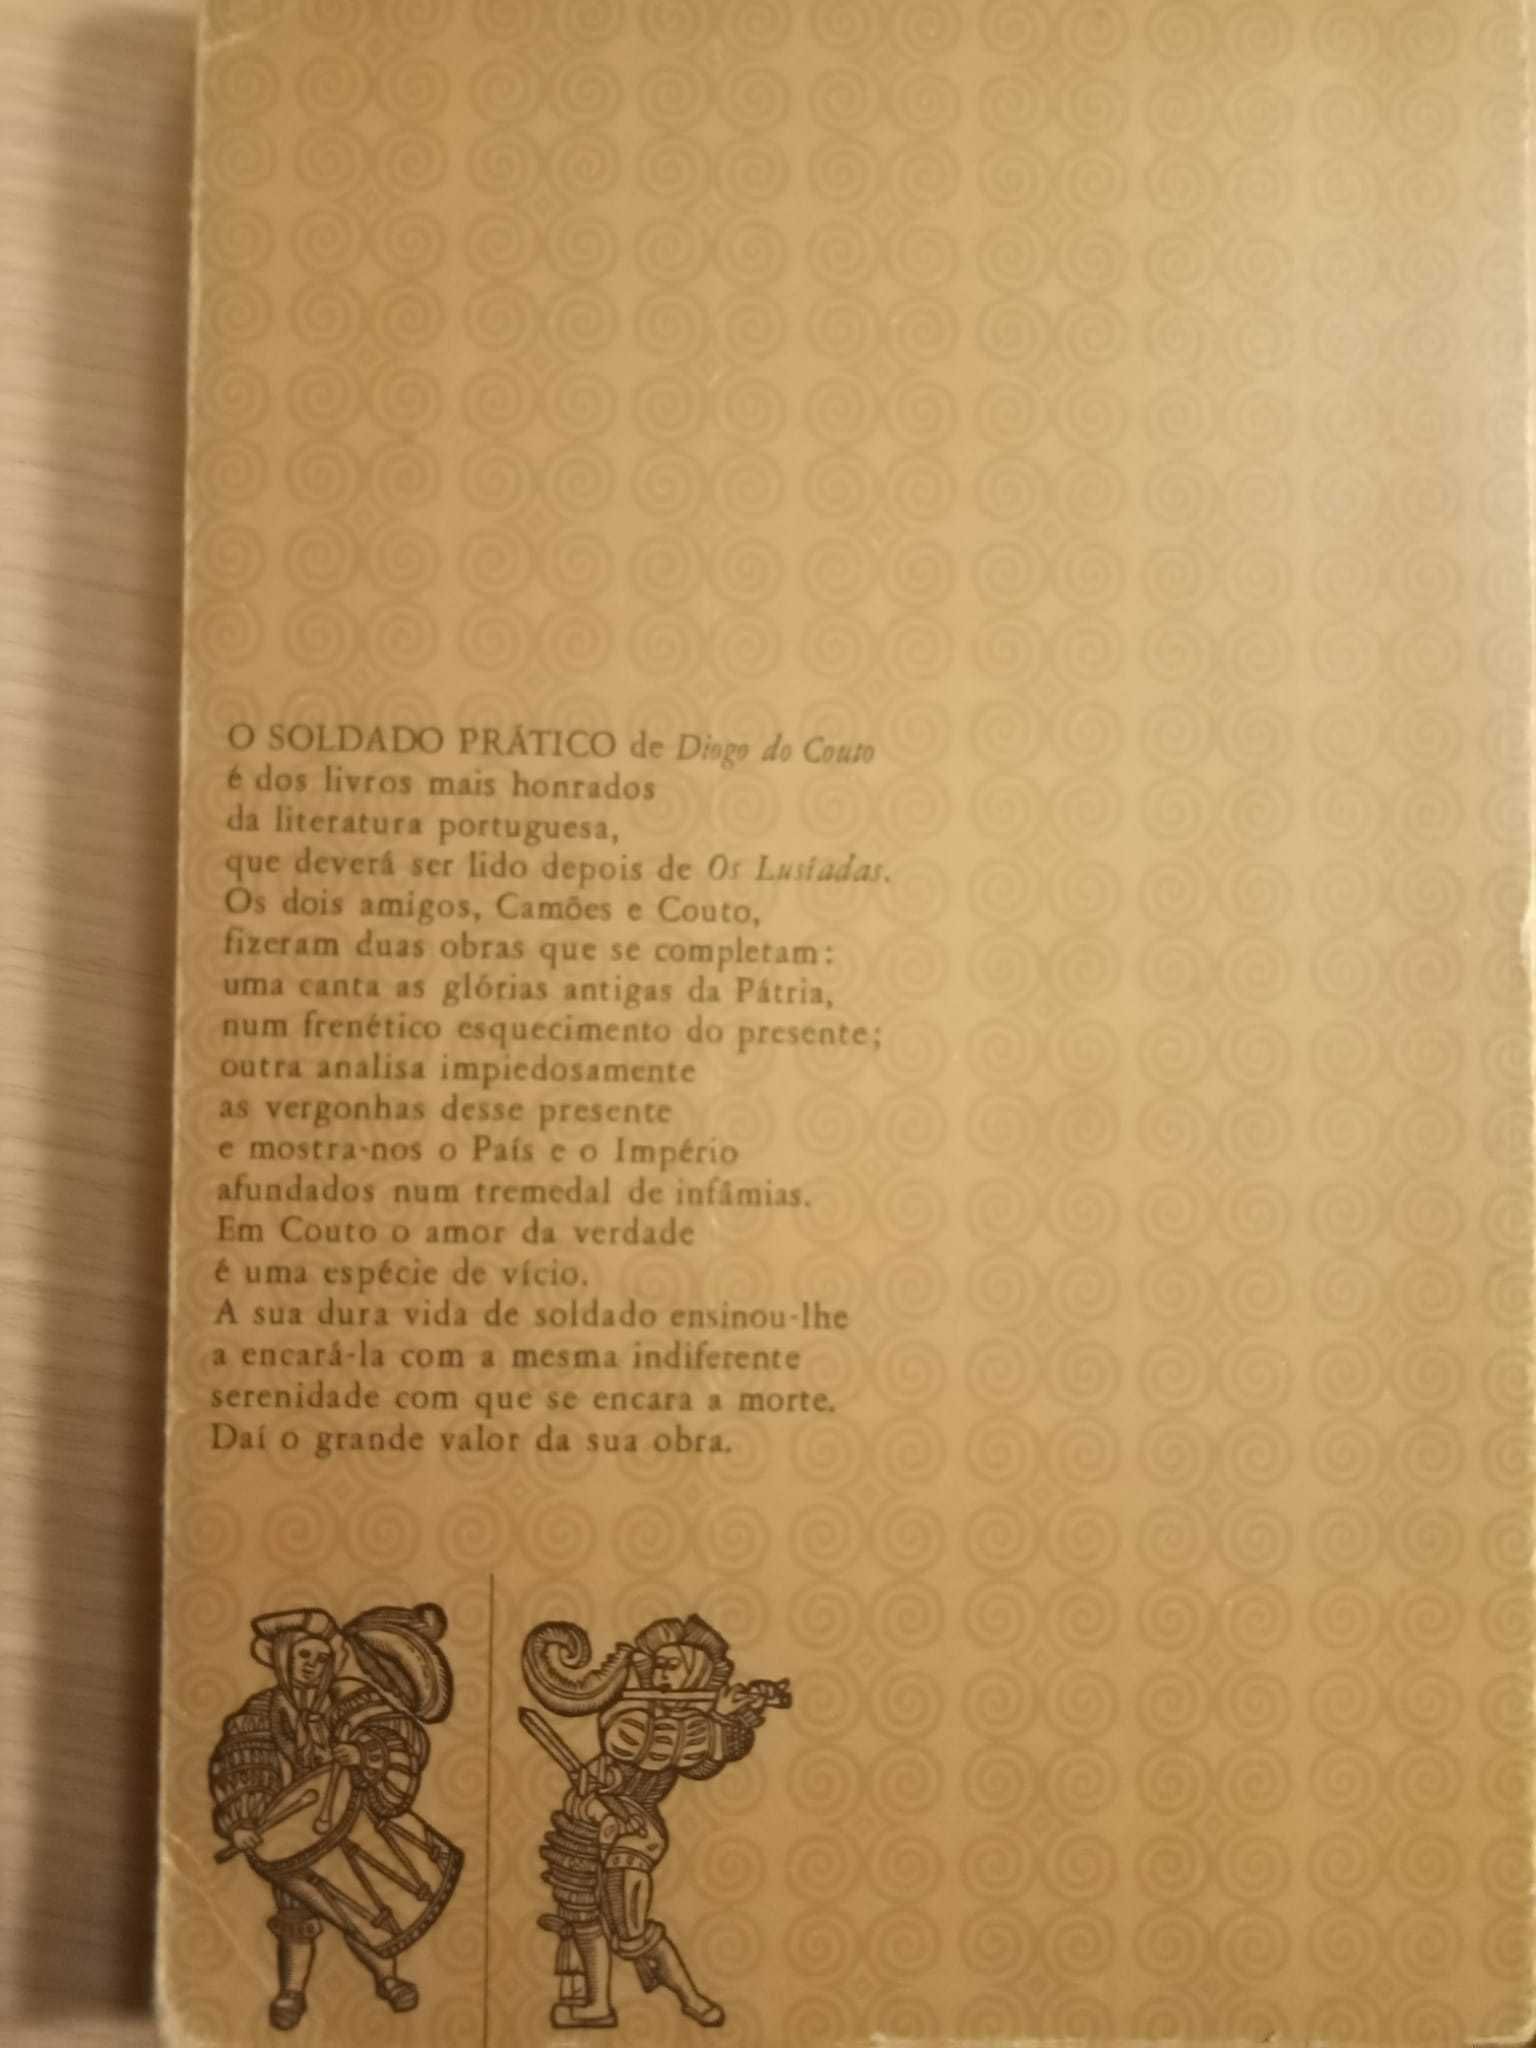 Soldado Prático, Diogo Couto - relato de Portugal e do Império (XVII)